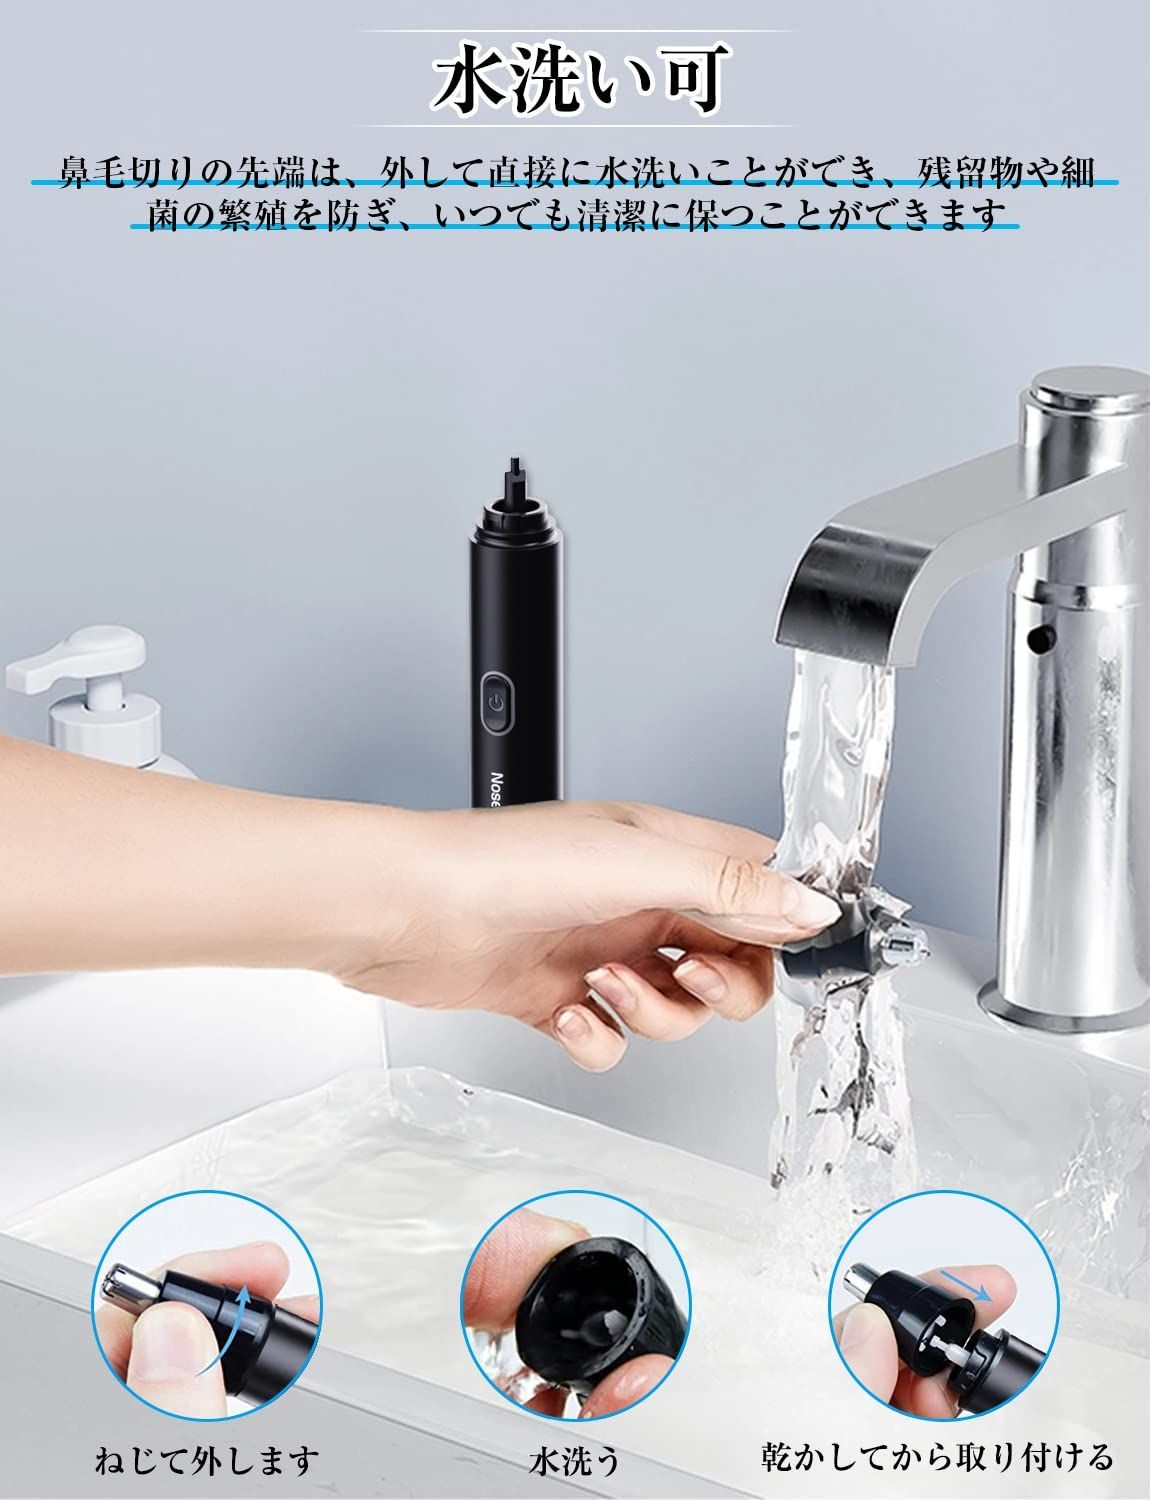 鼻毛カッター 替刃付き 水洗い可能 Type-c充電式 電動 低騒音 男女兼用